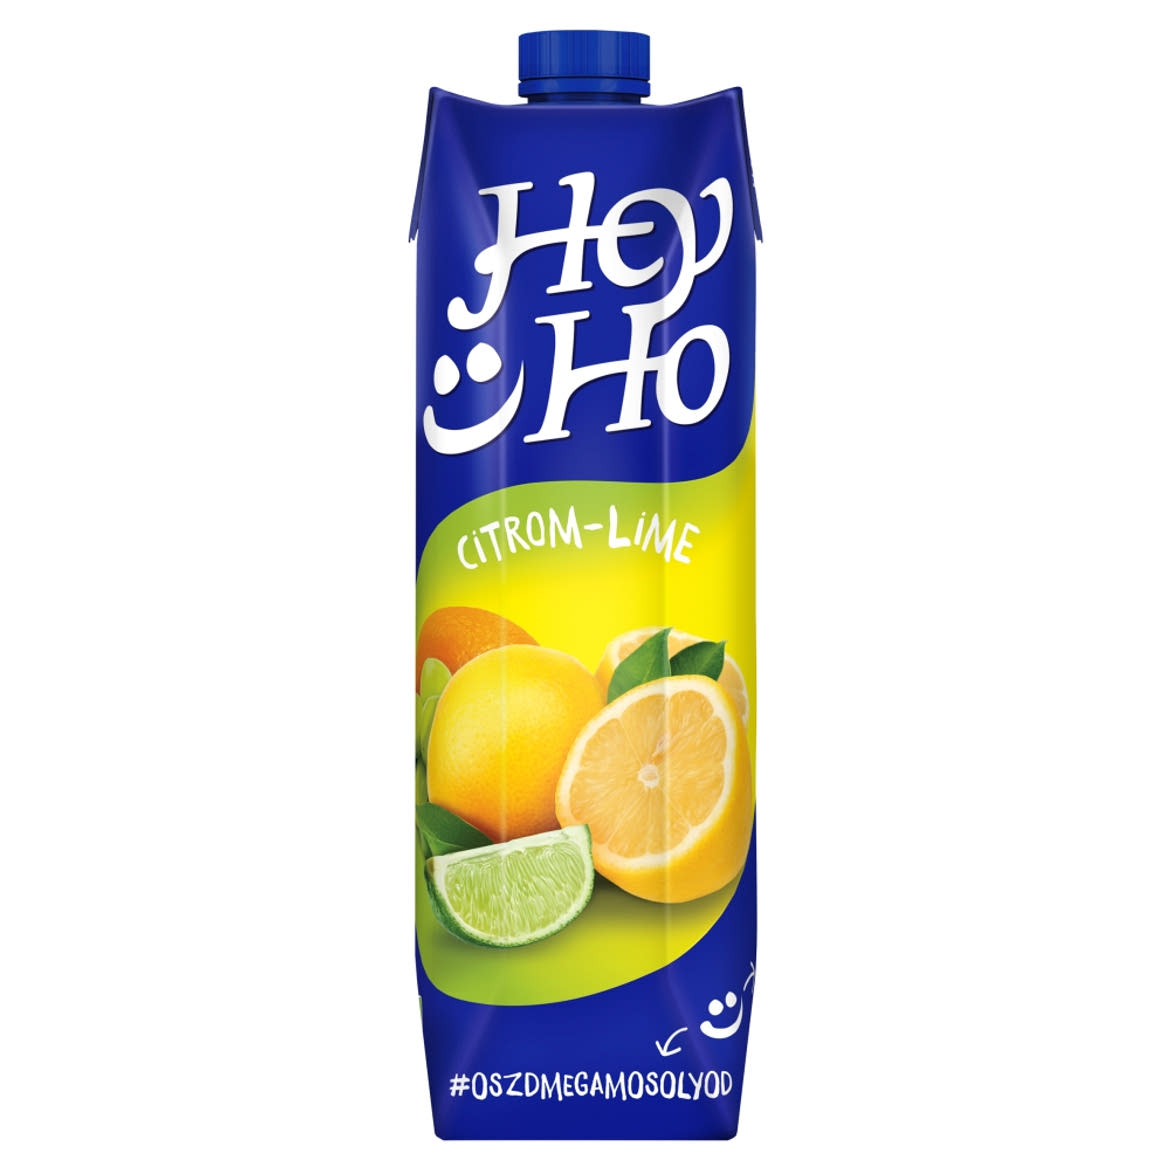 Hey-Ho citrom-lime ital